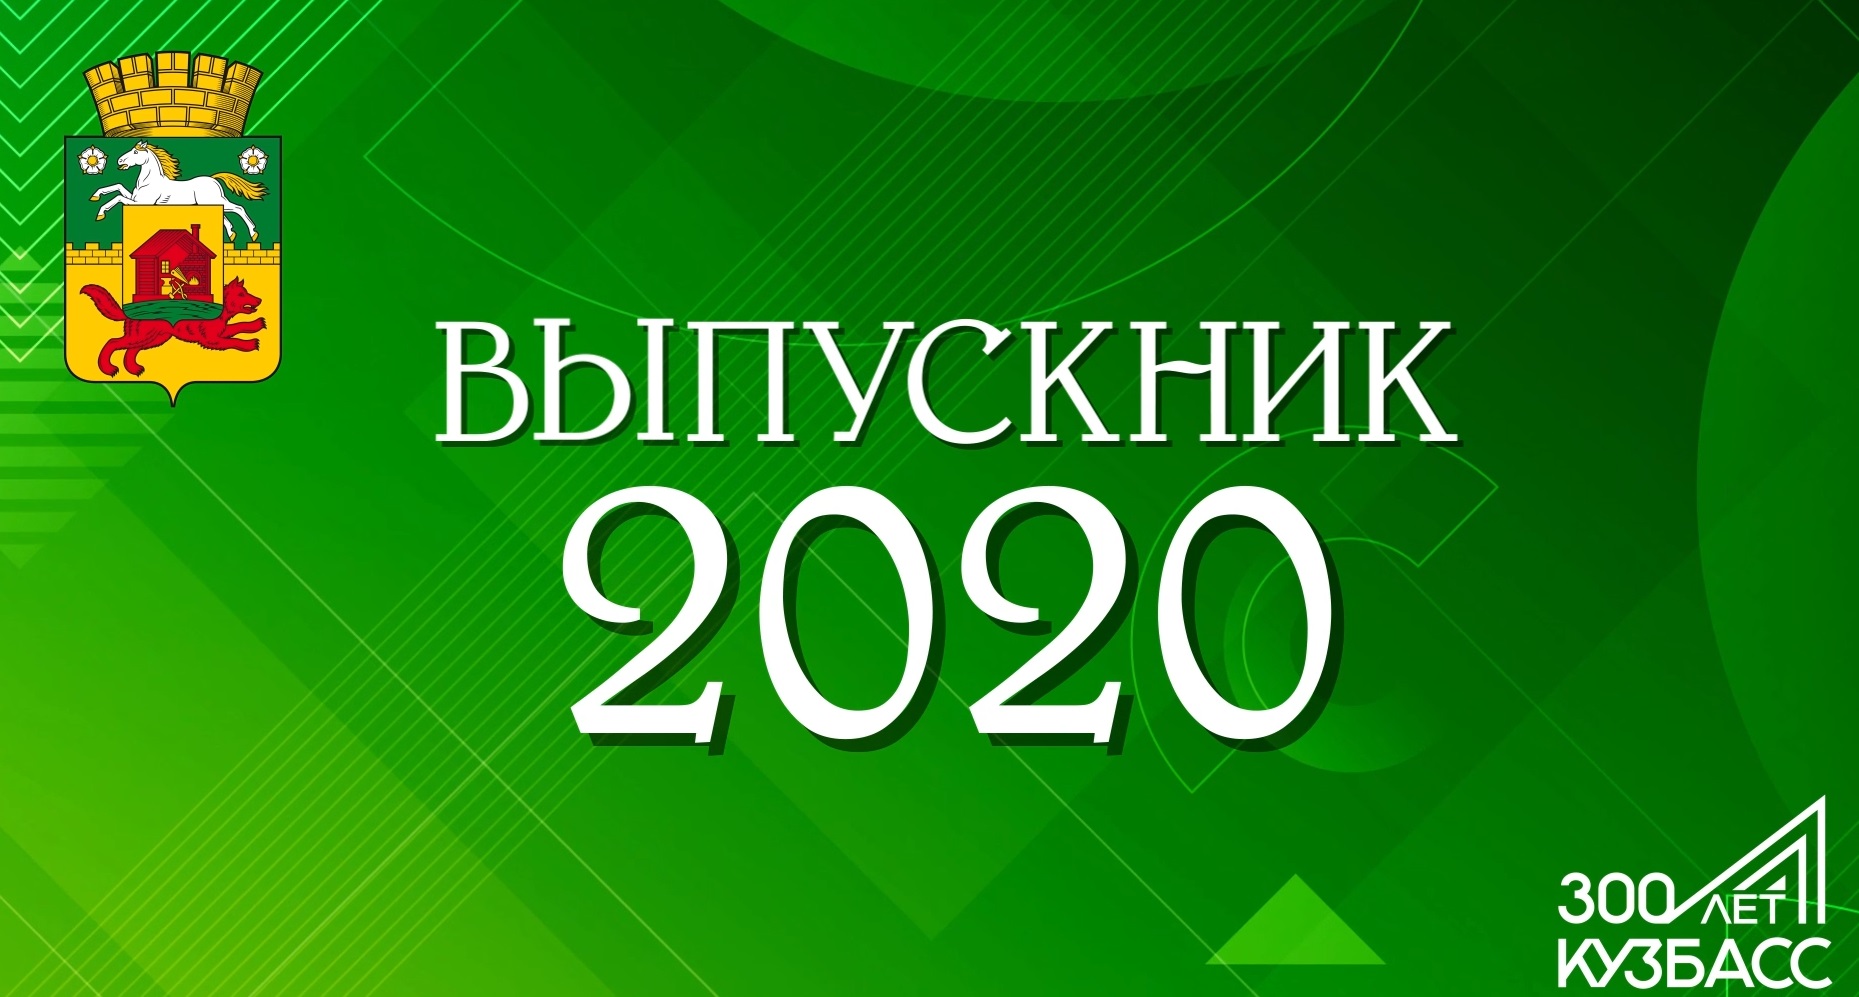 Последний звонок 2020 в формате онлайн в Новокузнецке